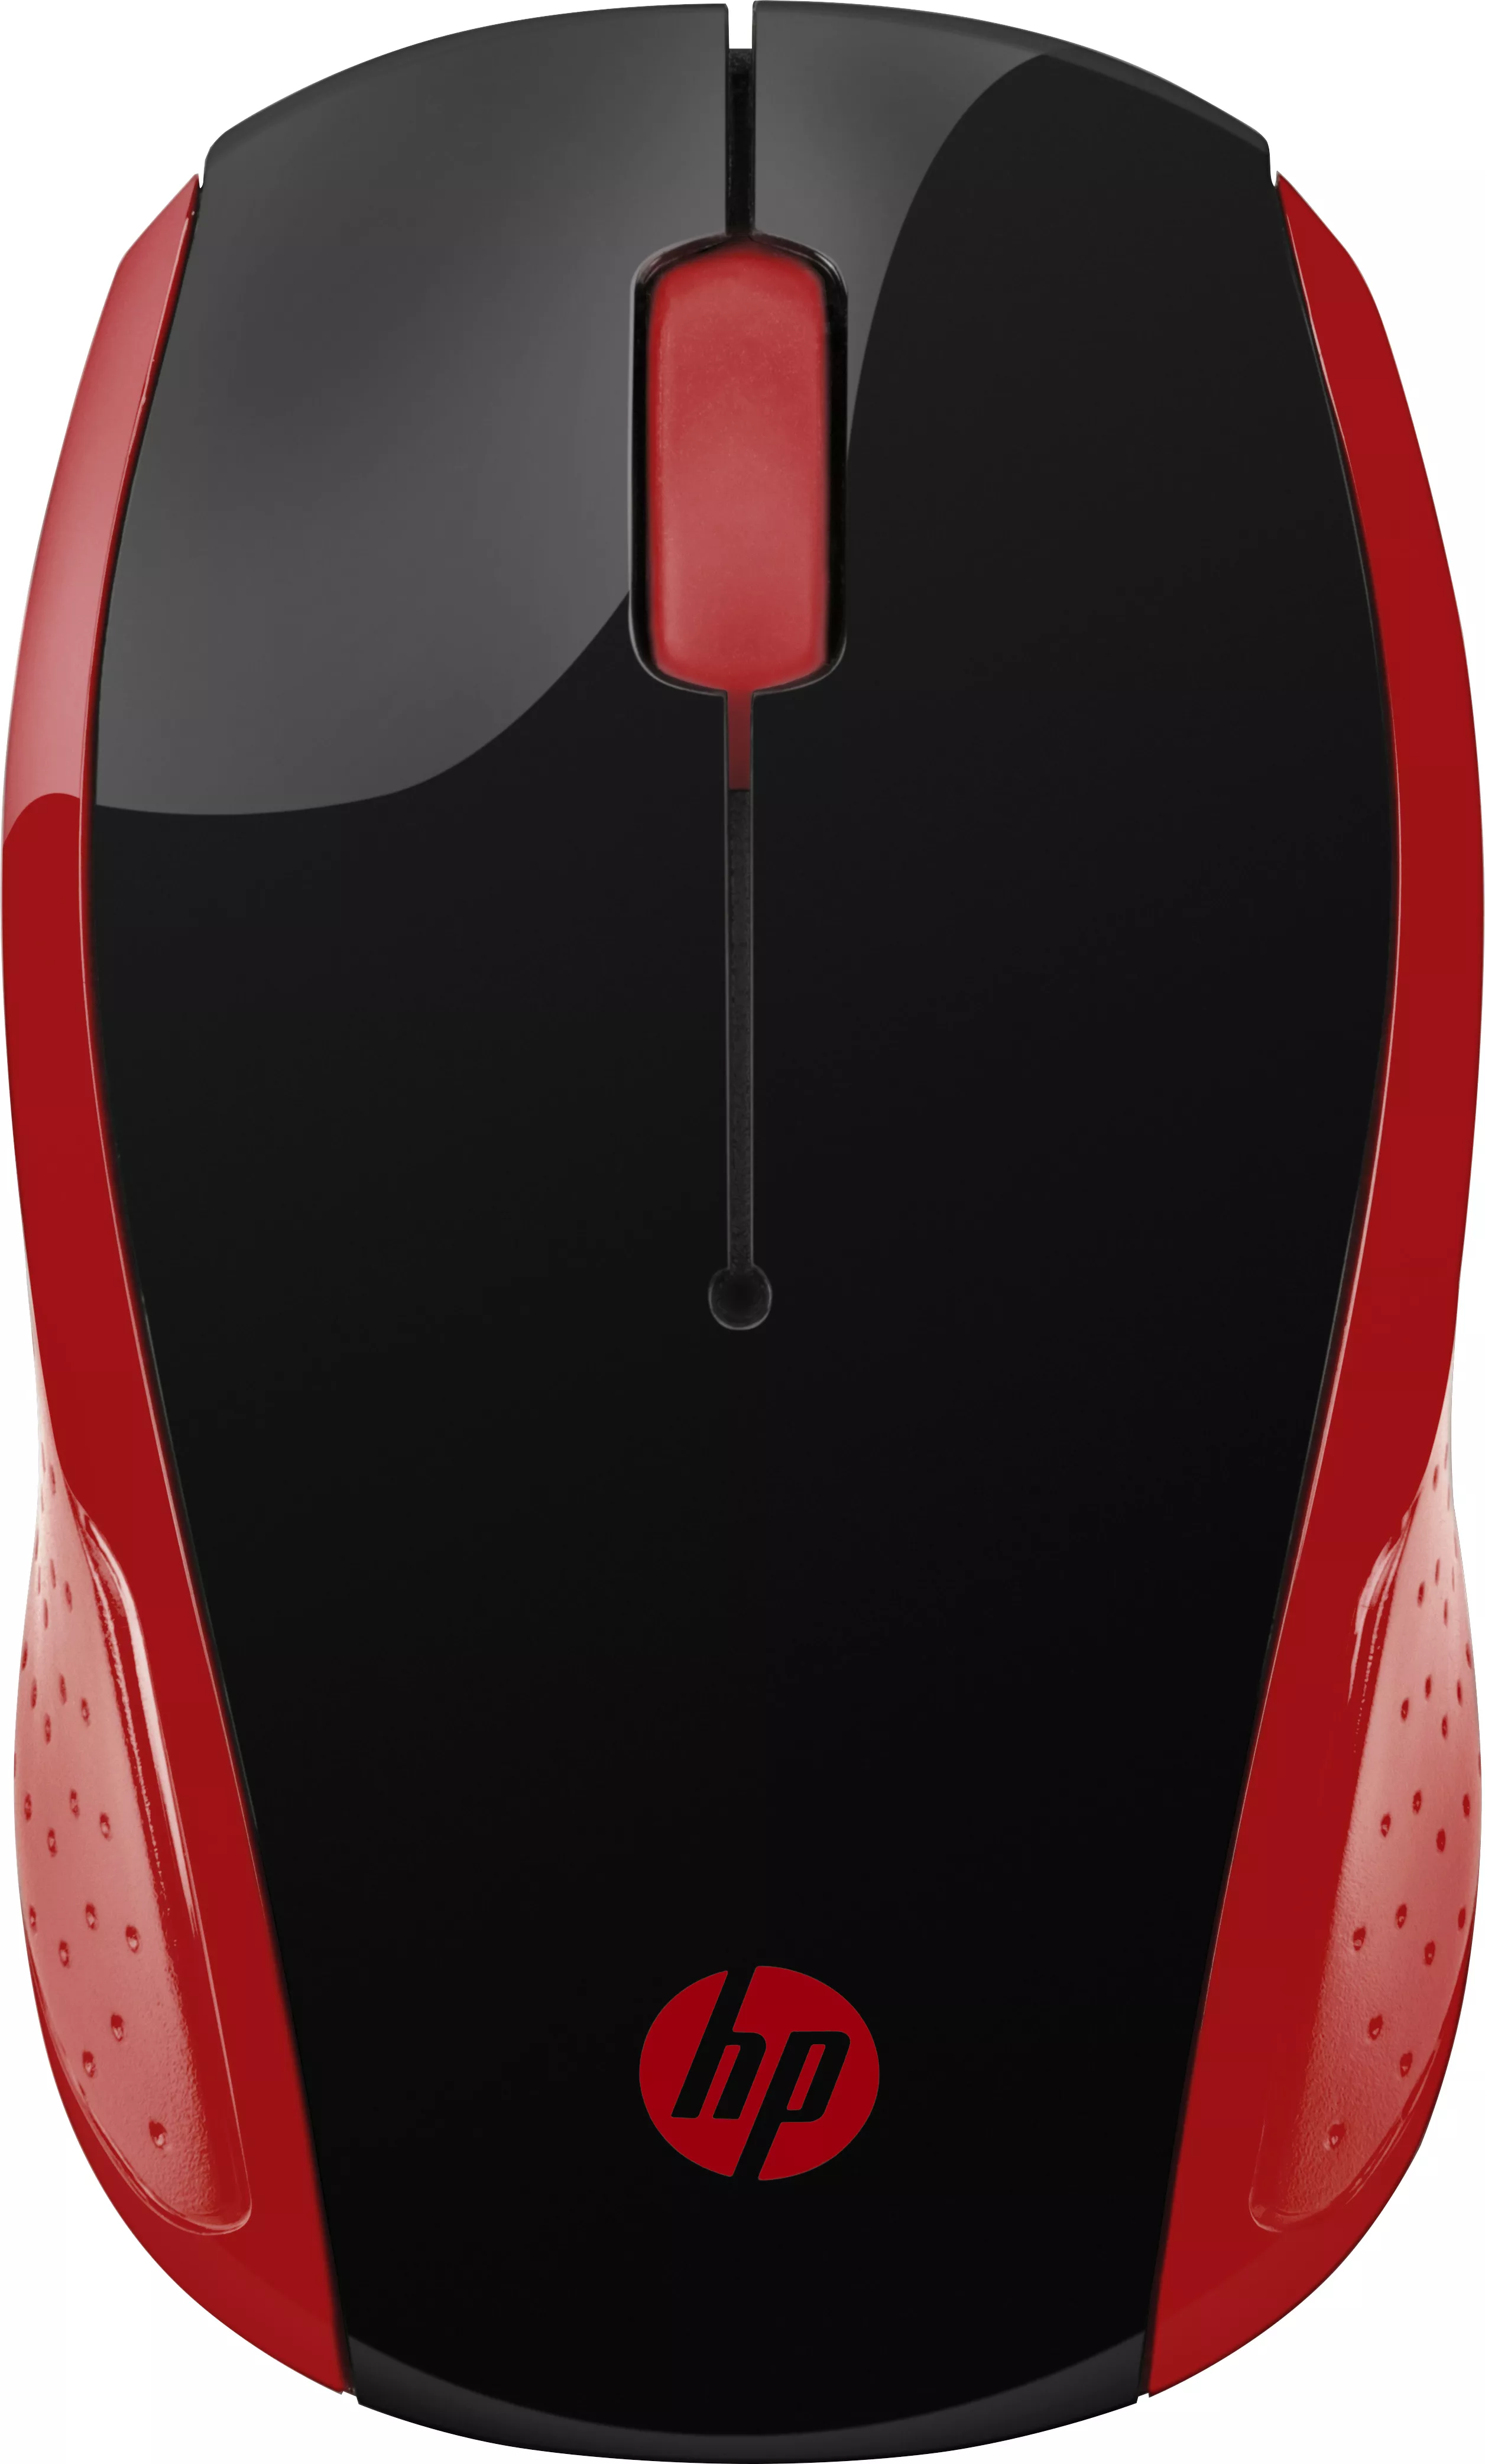 Vente HP Wireless Mouse 200 Empres Red HP au meilleur prix - visuel 4